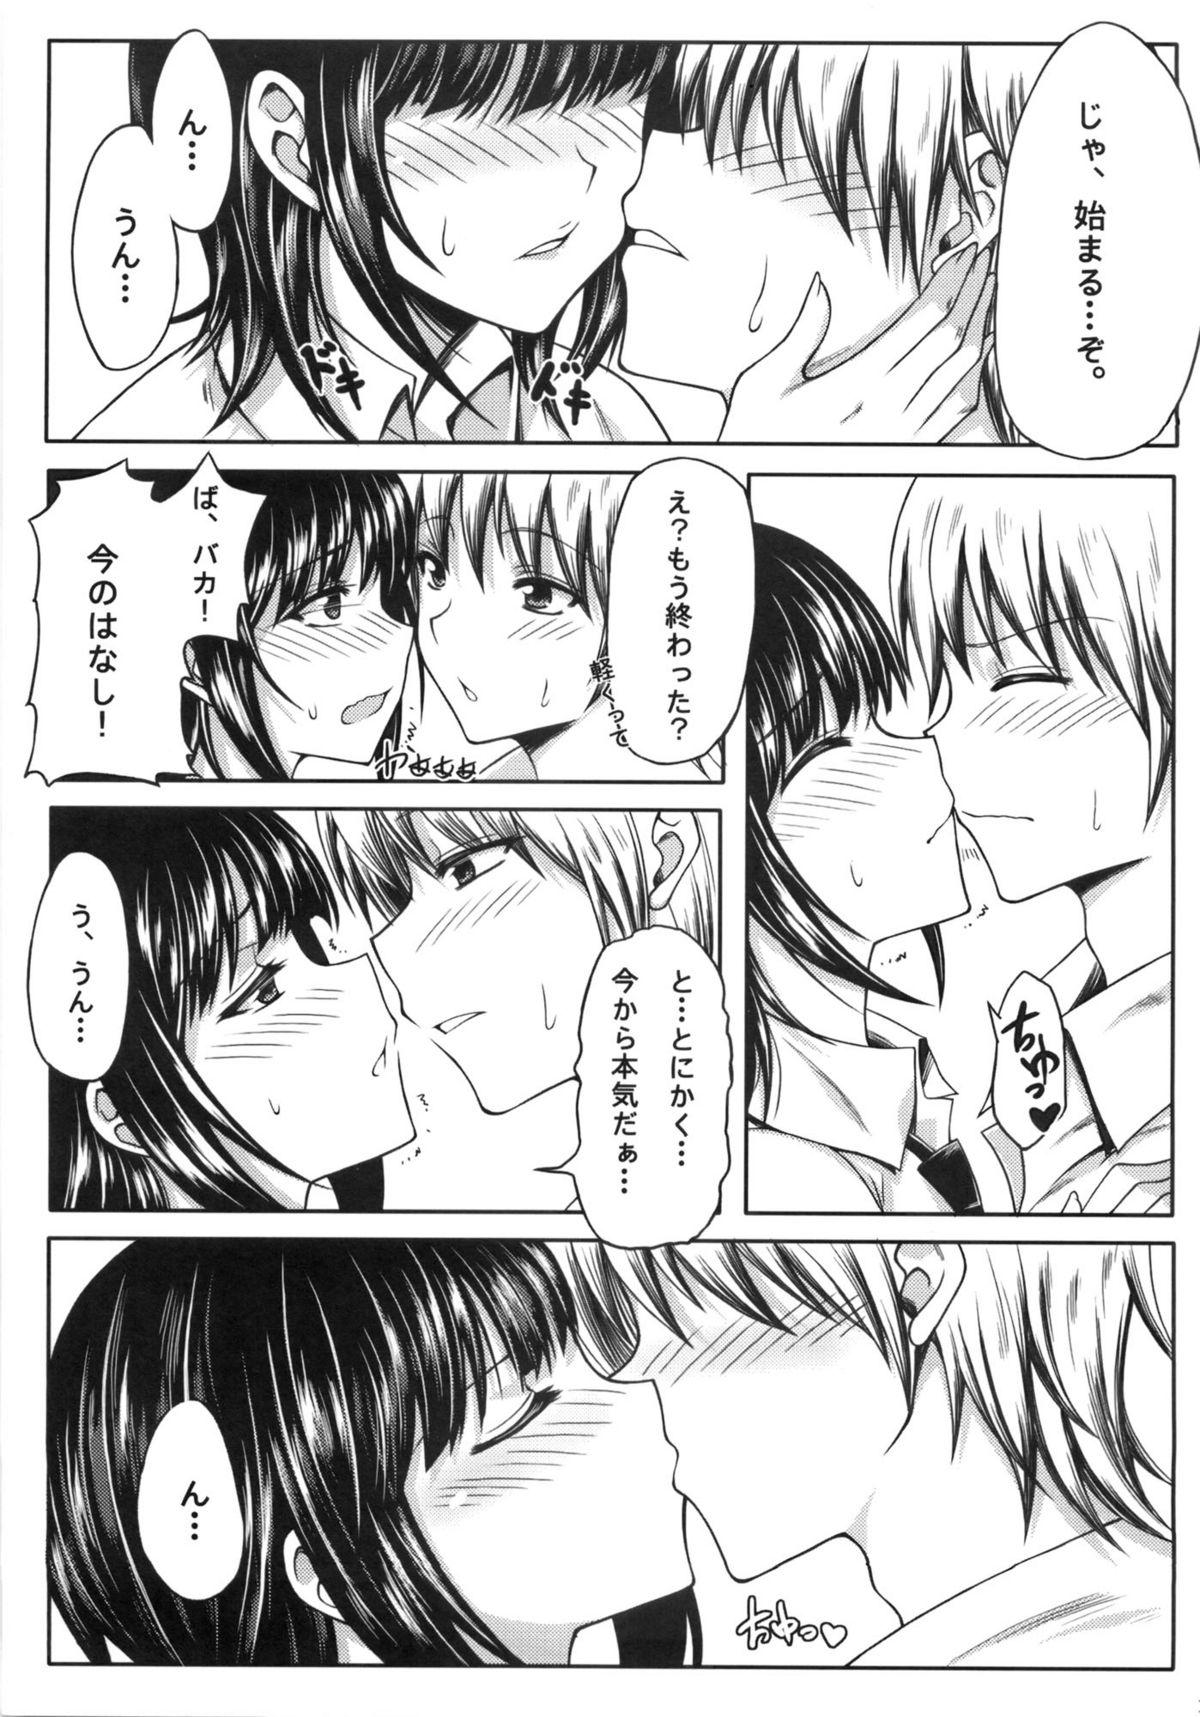 Gostosas Boku wa Yozora to Riajuu ni Naritai - Boku wa tomodachi ga sukunai Threesome - Page 10